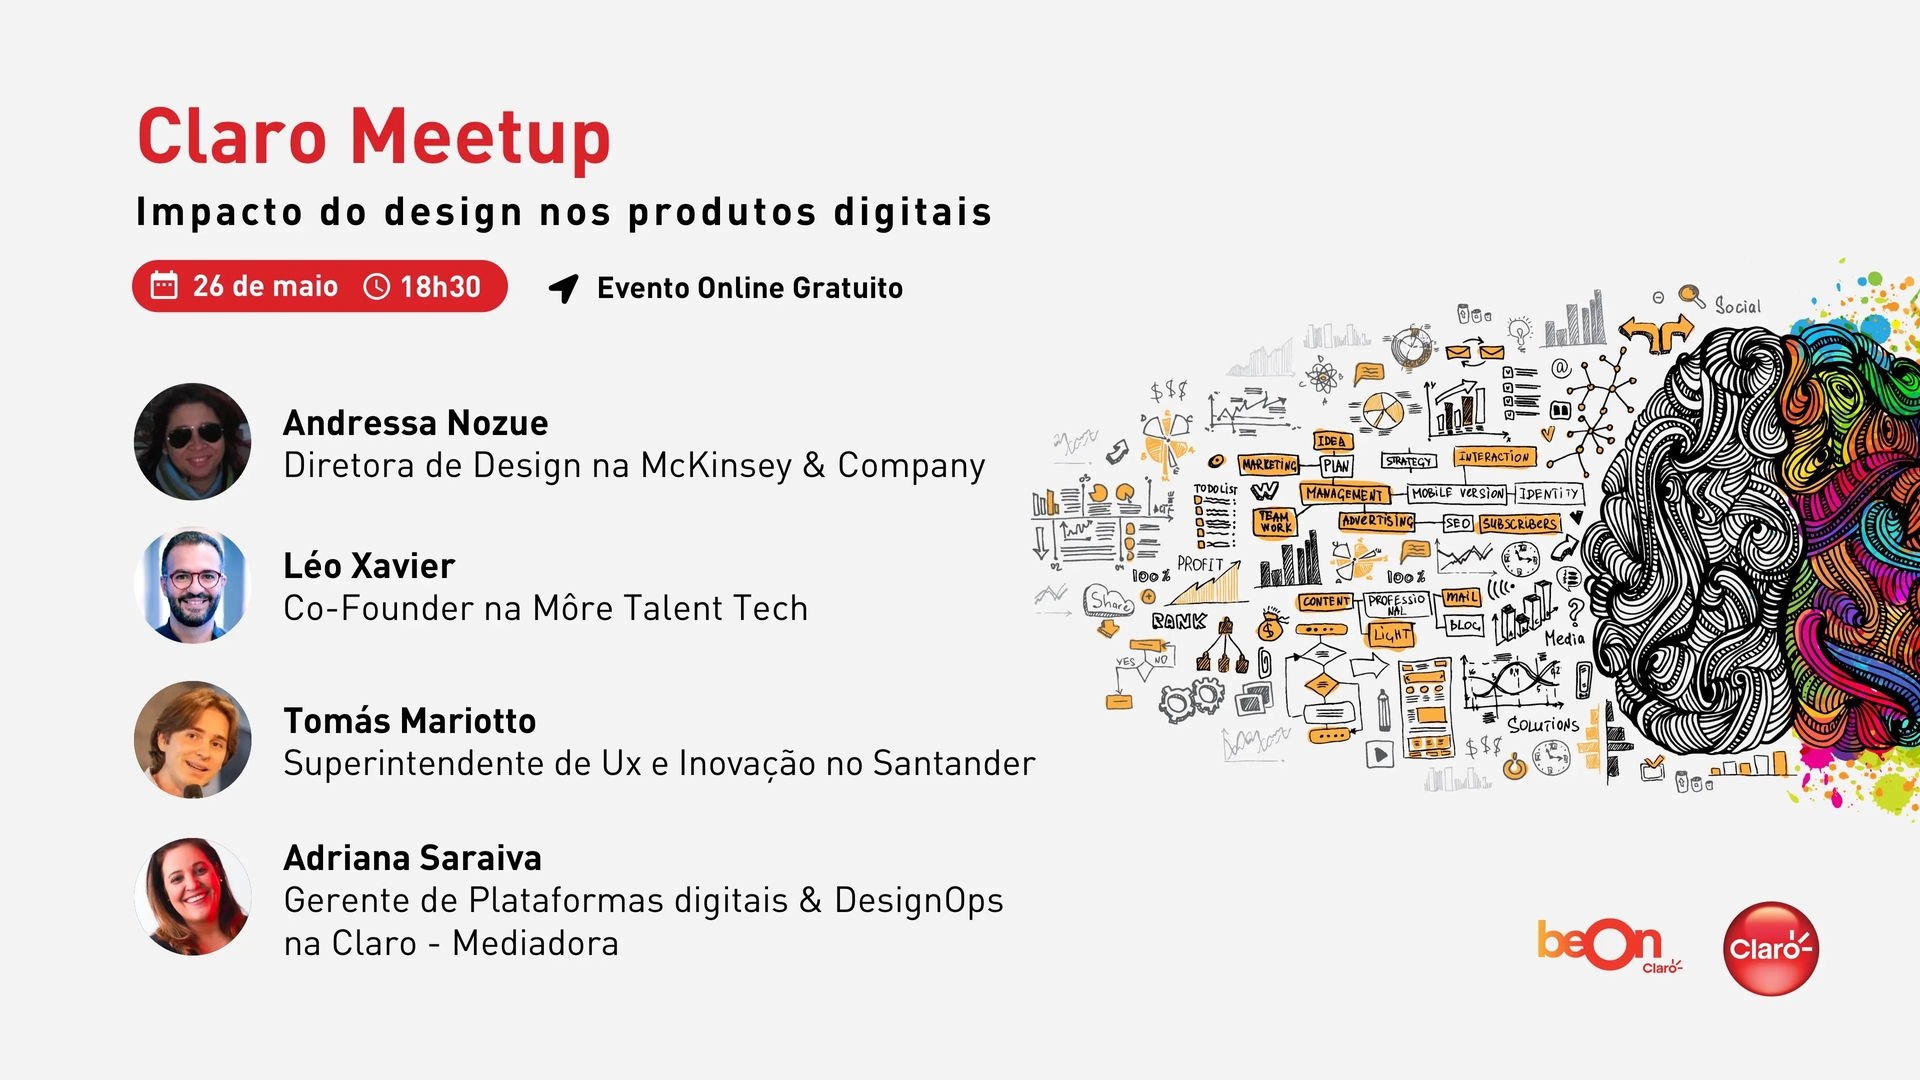 Imagem do convite do Claro Meetup: O impacto do design nos produtos digitais